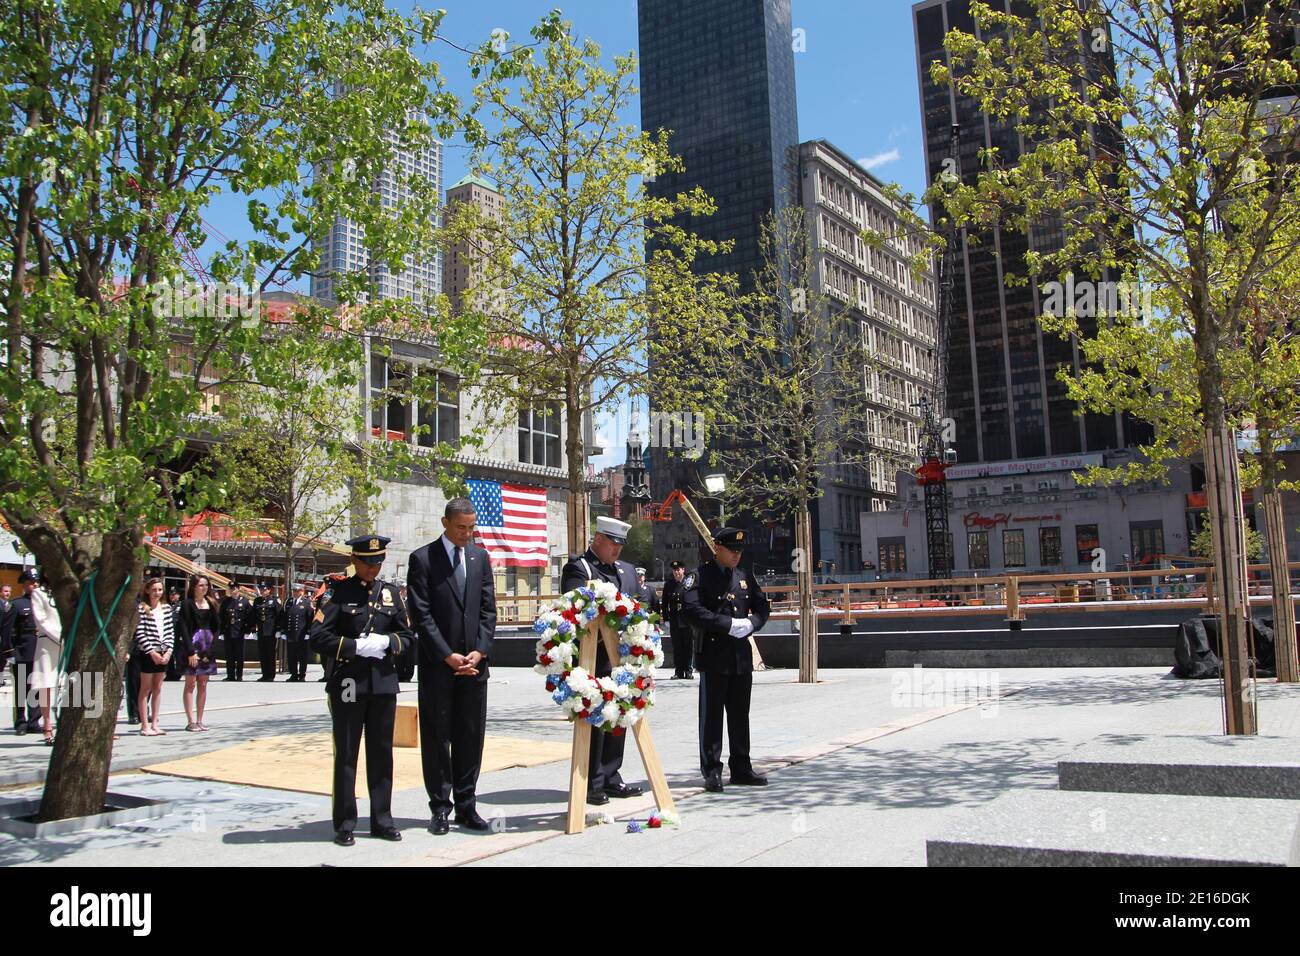 El presidente de los Estados Unidos, Barack Obama, camina con miembros del NYPD y del FDNY sosteniendo una corona mientras visita la Zona cero, el sitio de las antiguas Torres Gemelas, Días después de que Osama Bin Laden fuera asesinado por los sellos de la Marina de los Estados Unidos casi 10 años después de los ataques terroristas contra el World Trade Center en la ciudad de Nueva York, NY, EE.UU. El 5 de mayo de 2011.Foto de Mehdi Taamallah/ABACAPRESS.COM Foto de stock